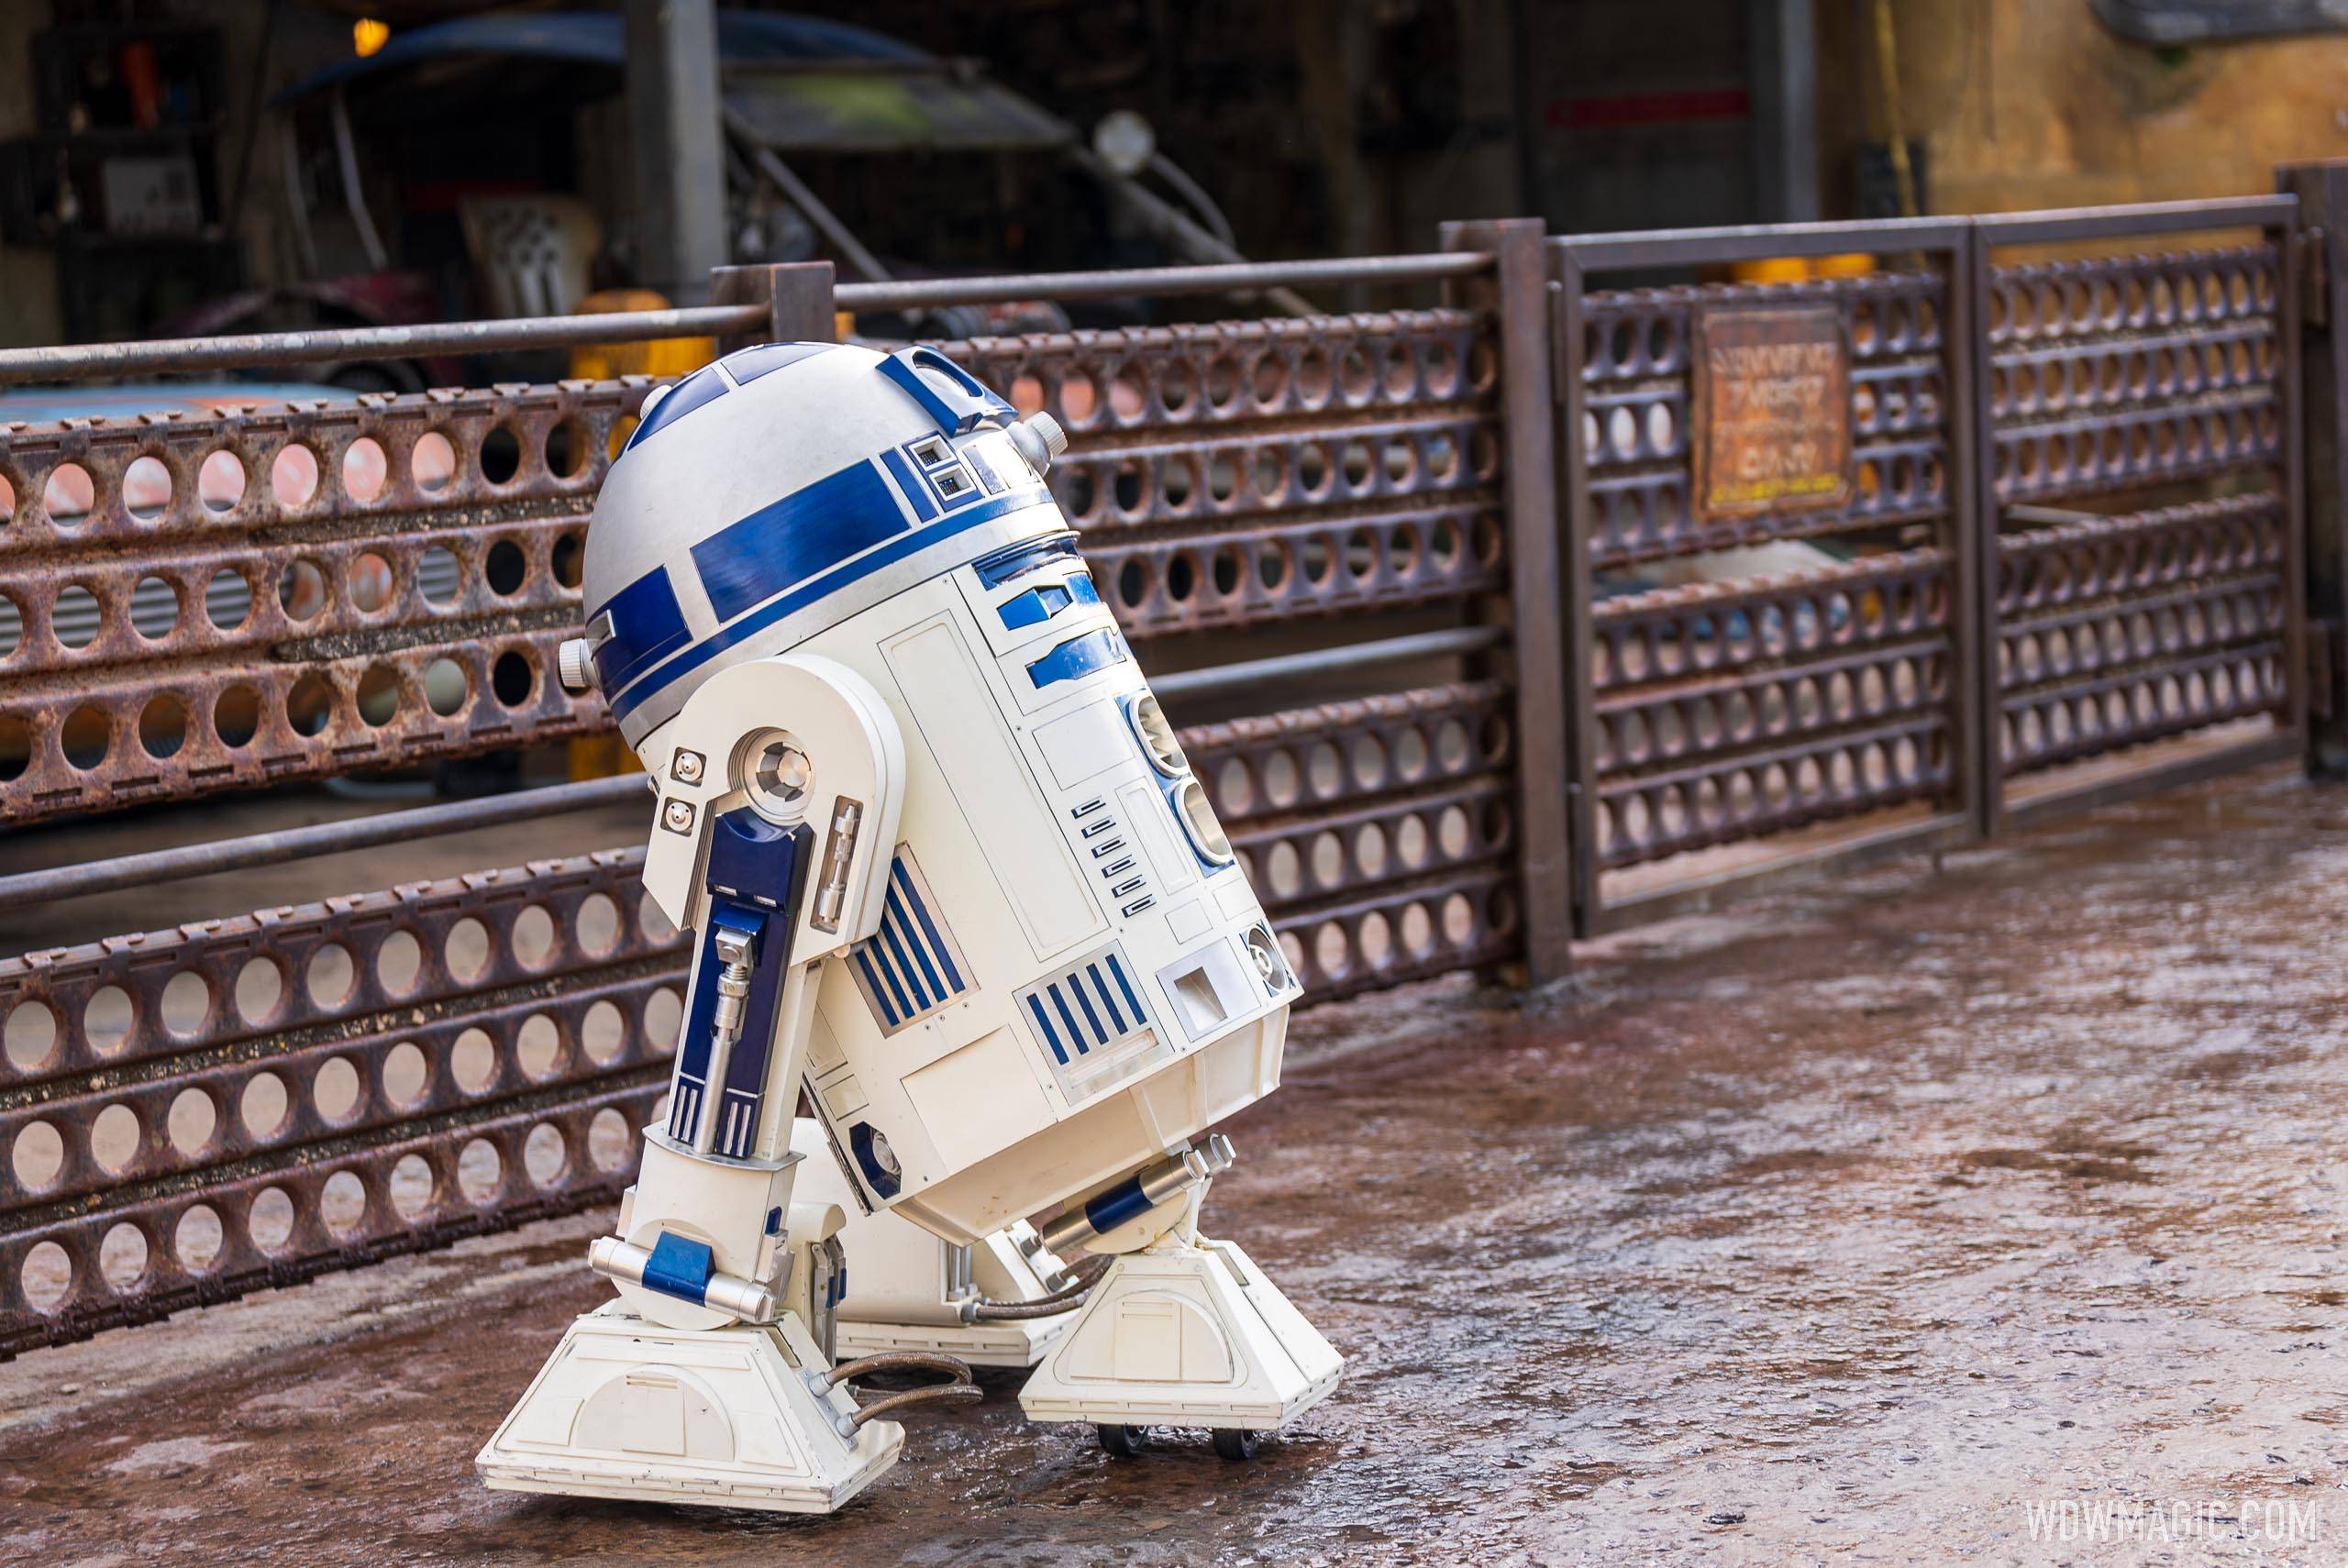 R2-D2 at Star Wars Galaxy's Edge